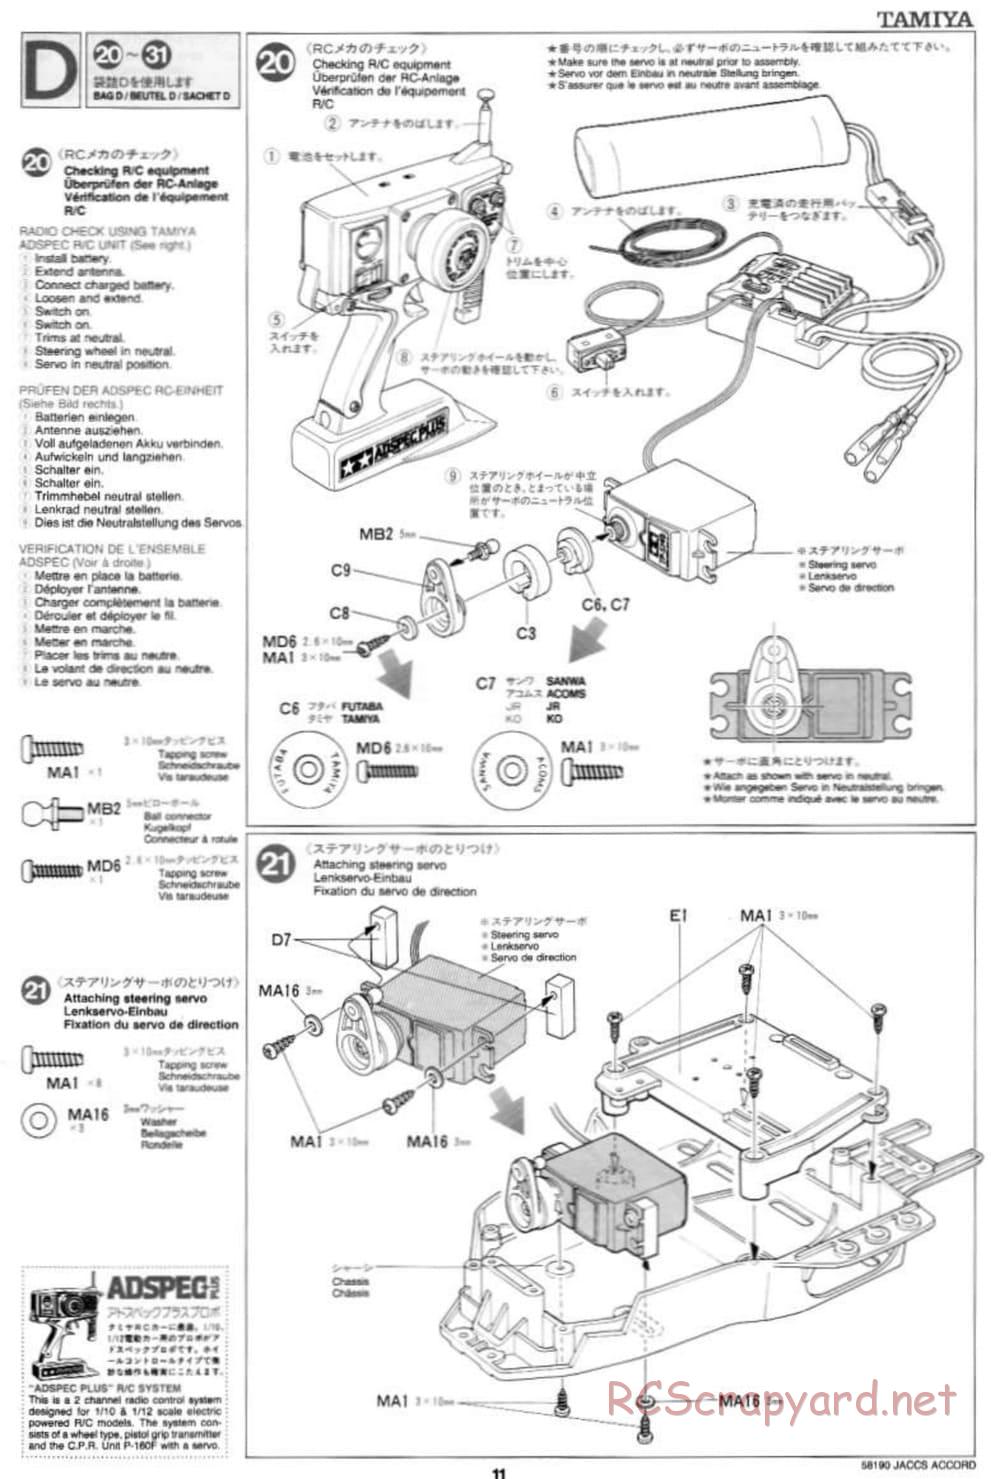 Tamiya - JACCS Honda Accord - FF-01 Chassis - Manual - Page 11